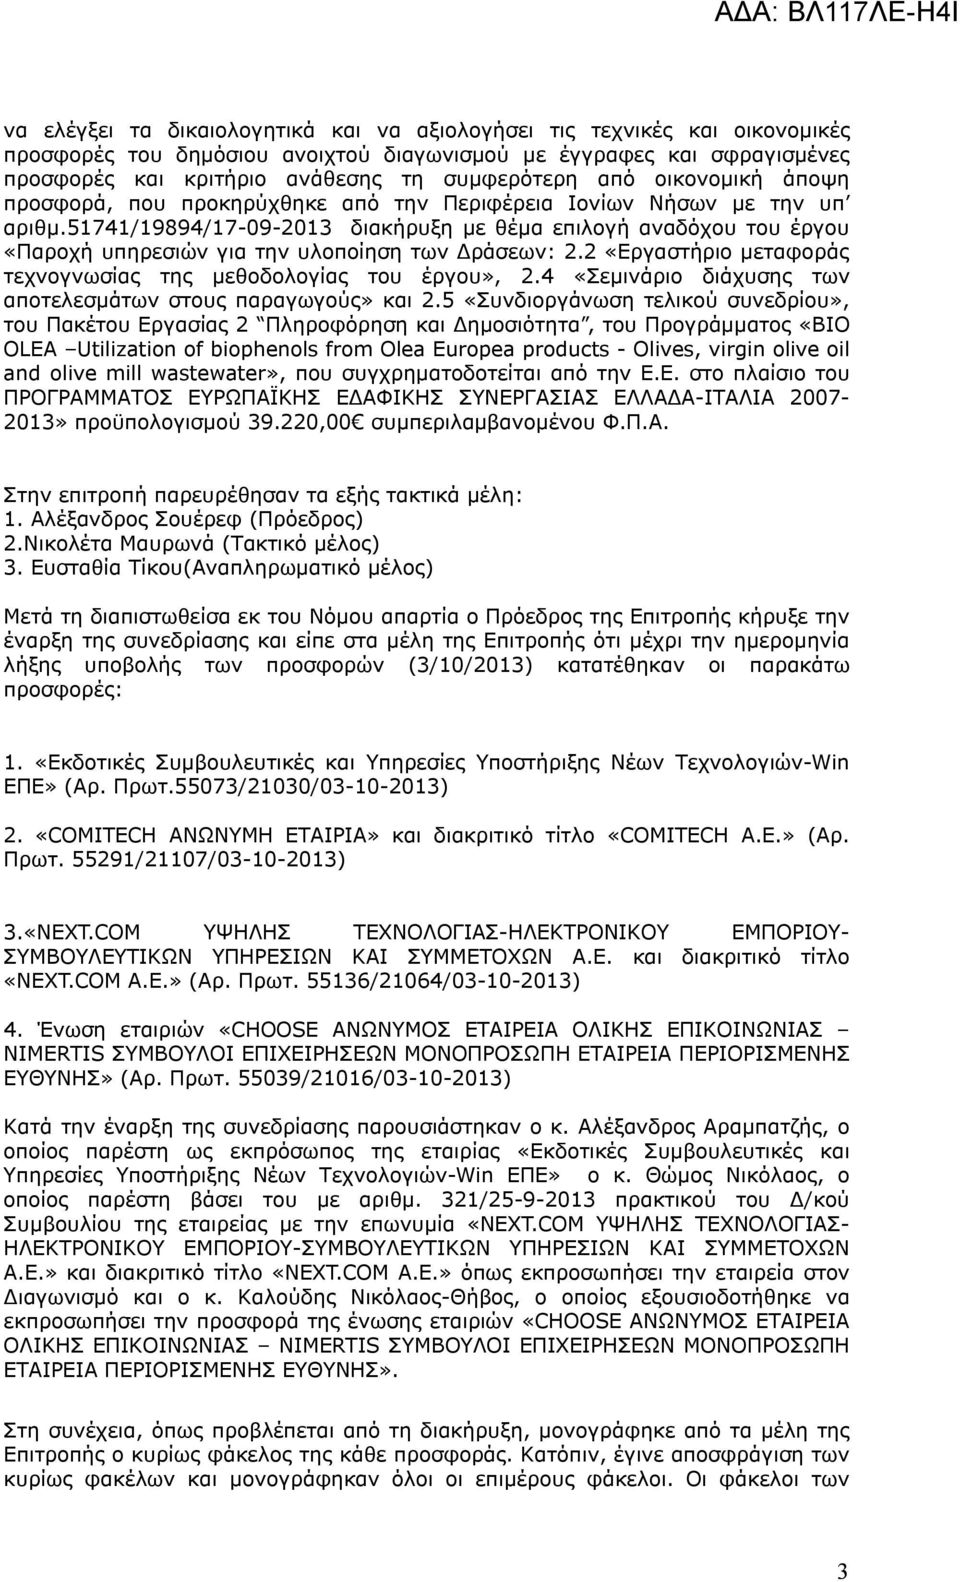 51741/19894/17-09-2013 διακήρυξη με θέμα επιλογή αναδόχου του έργου «Παροχή υπηρεσιών για την υλοποίηση των Δράσεων: 2.2 «Εργαστήριο μεταφοράς τεχνογνωσίας της μεθοδολογίας του έργου», 2.